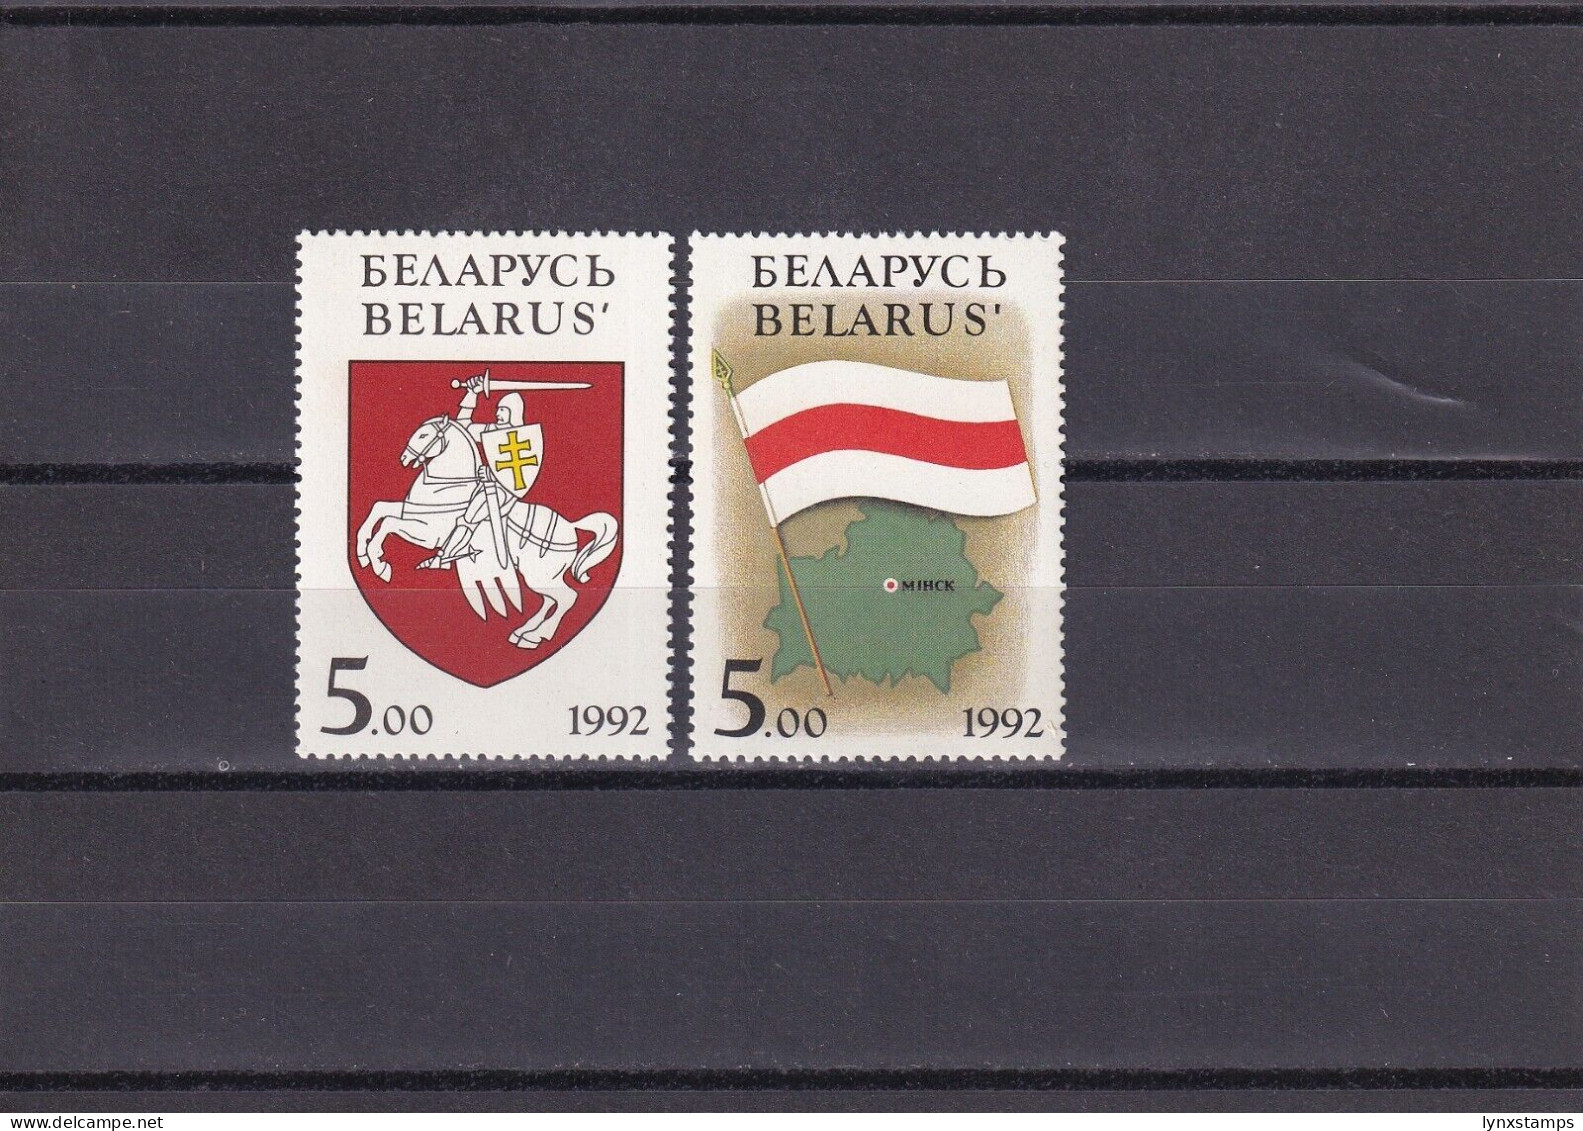 SA06 Belarus 1992 National Symbols Of Belarus Mint Stamps - Belarus